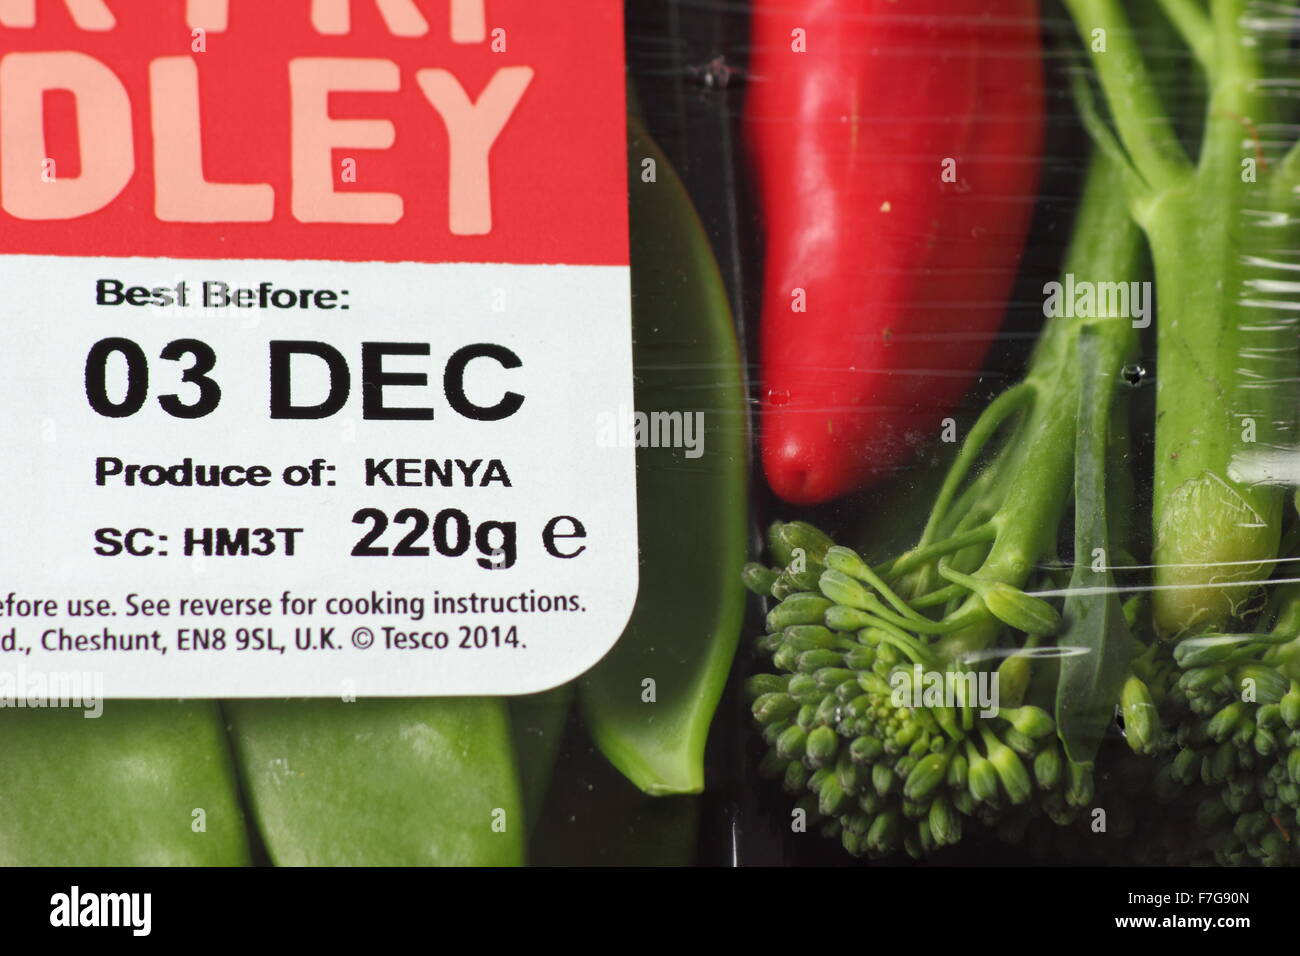 Meglio prima di etichetta sulla confezione di un Stir Fry Medley di verdure keniota dal supermercato Tesco, England Regno Unito - solo uso editoriale Foto Stock